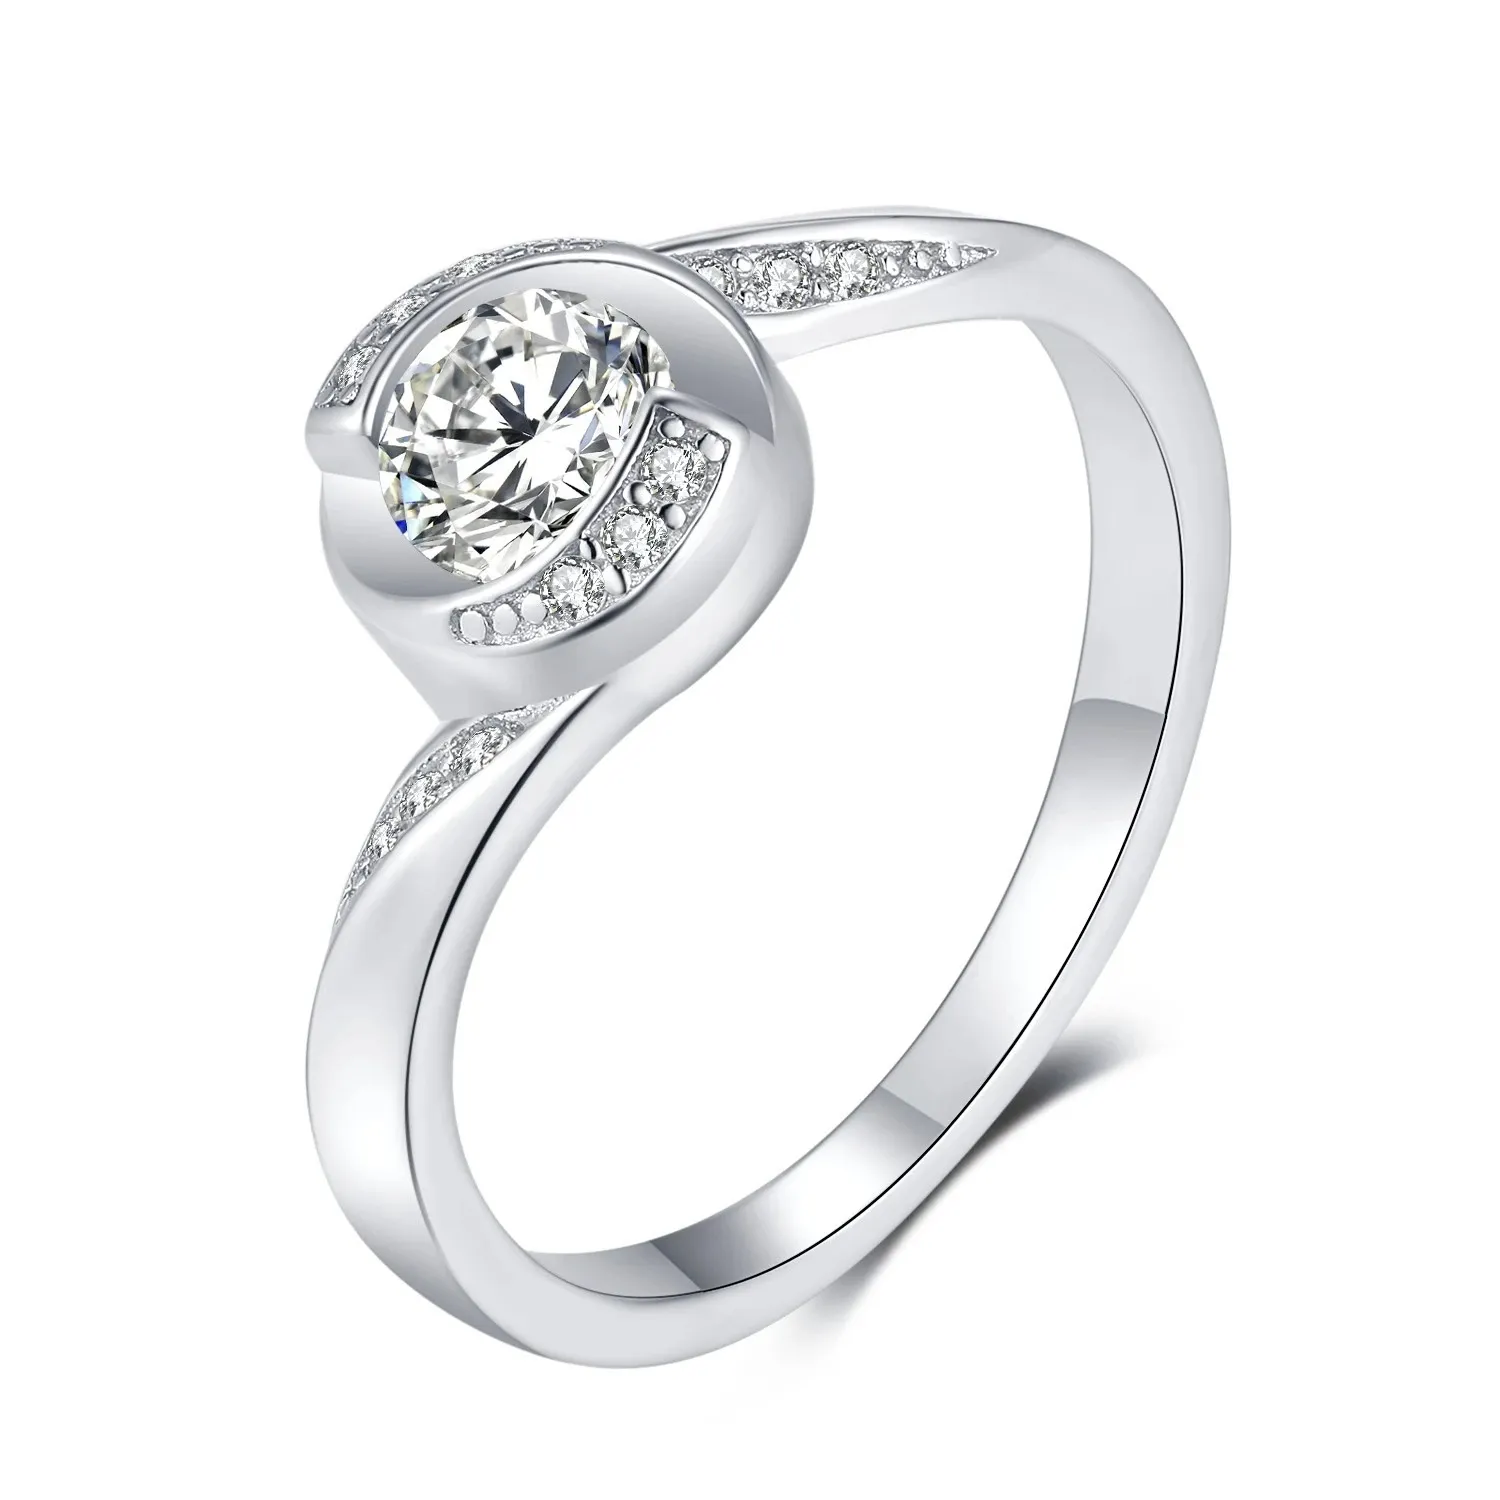 Popolare in American D-Colour Moissanite Diamante Diamante S925 Platinum Platin Plated Fashion Anello di nozze Semplice Elegante gioielli femminili